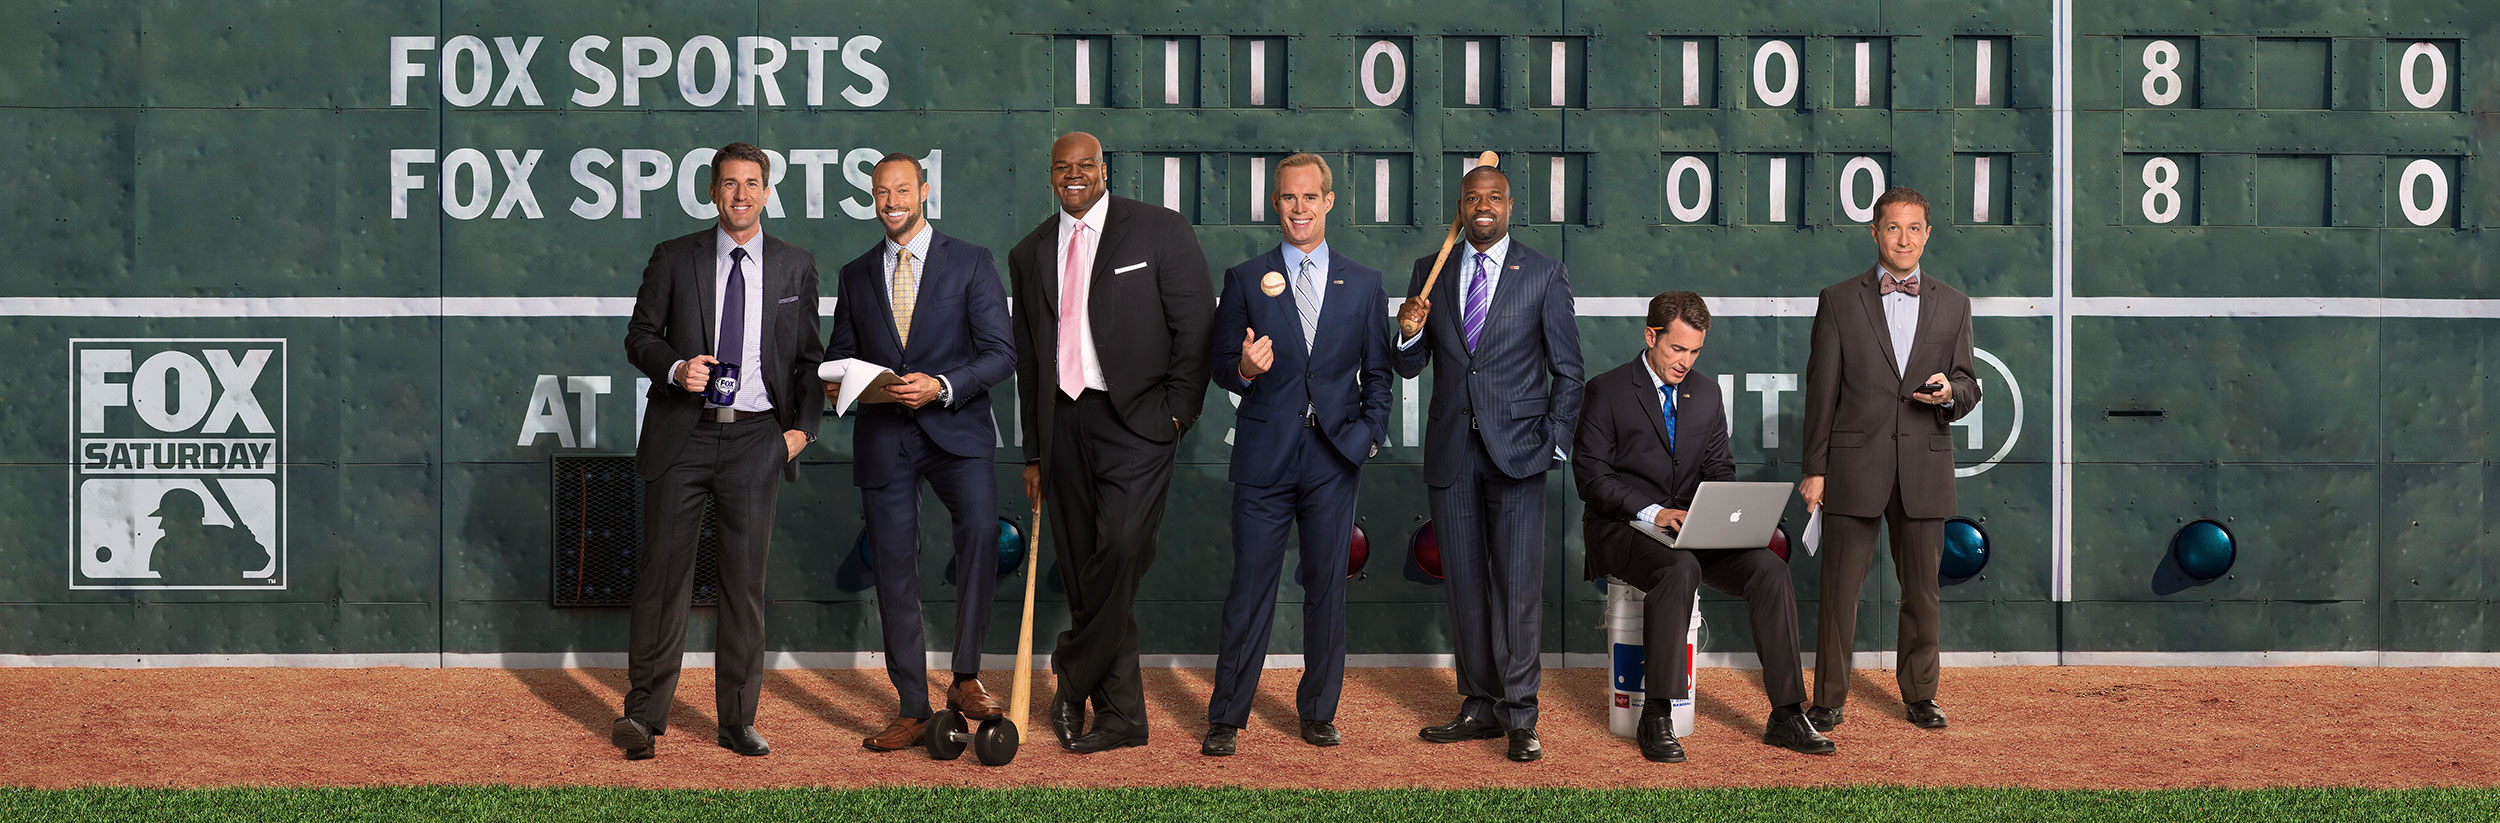 Fox Sports | MLB Wall